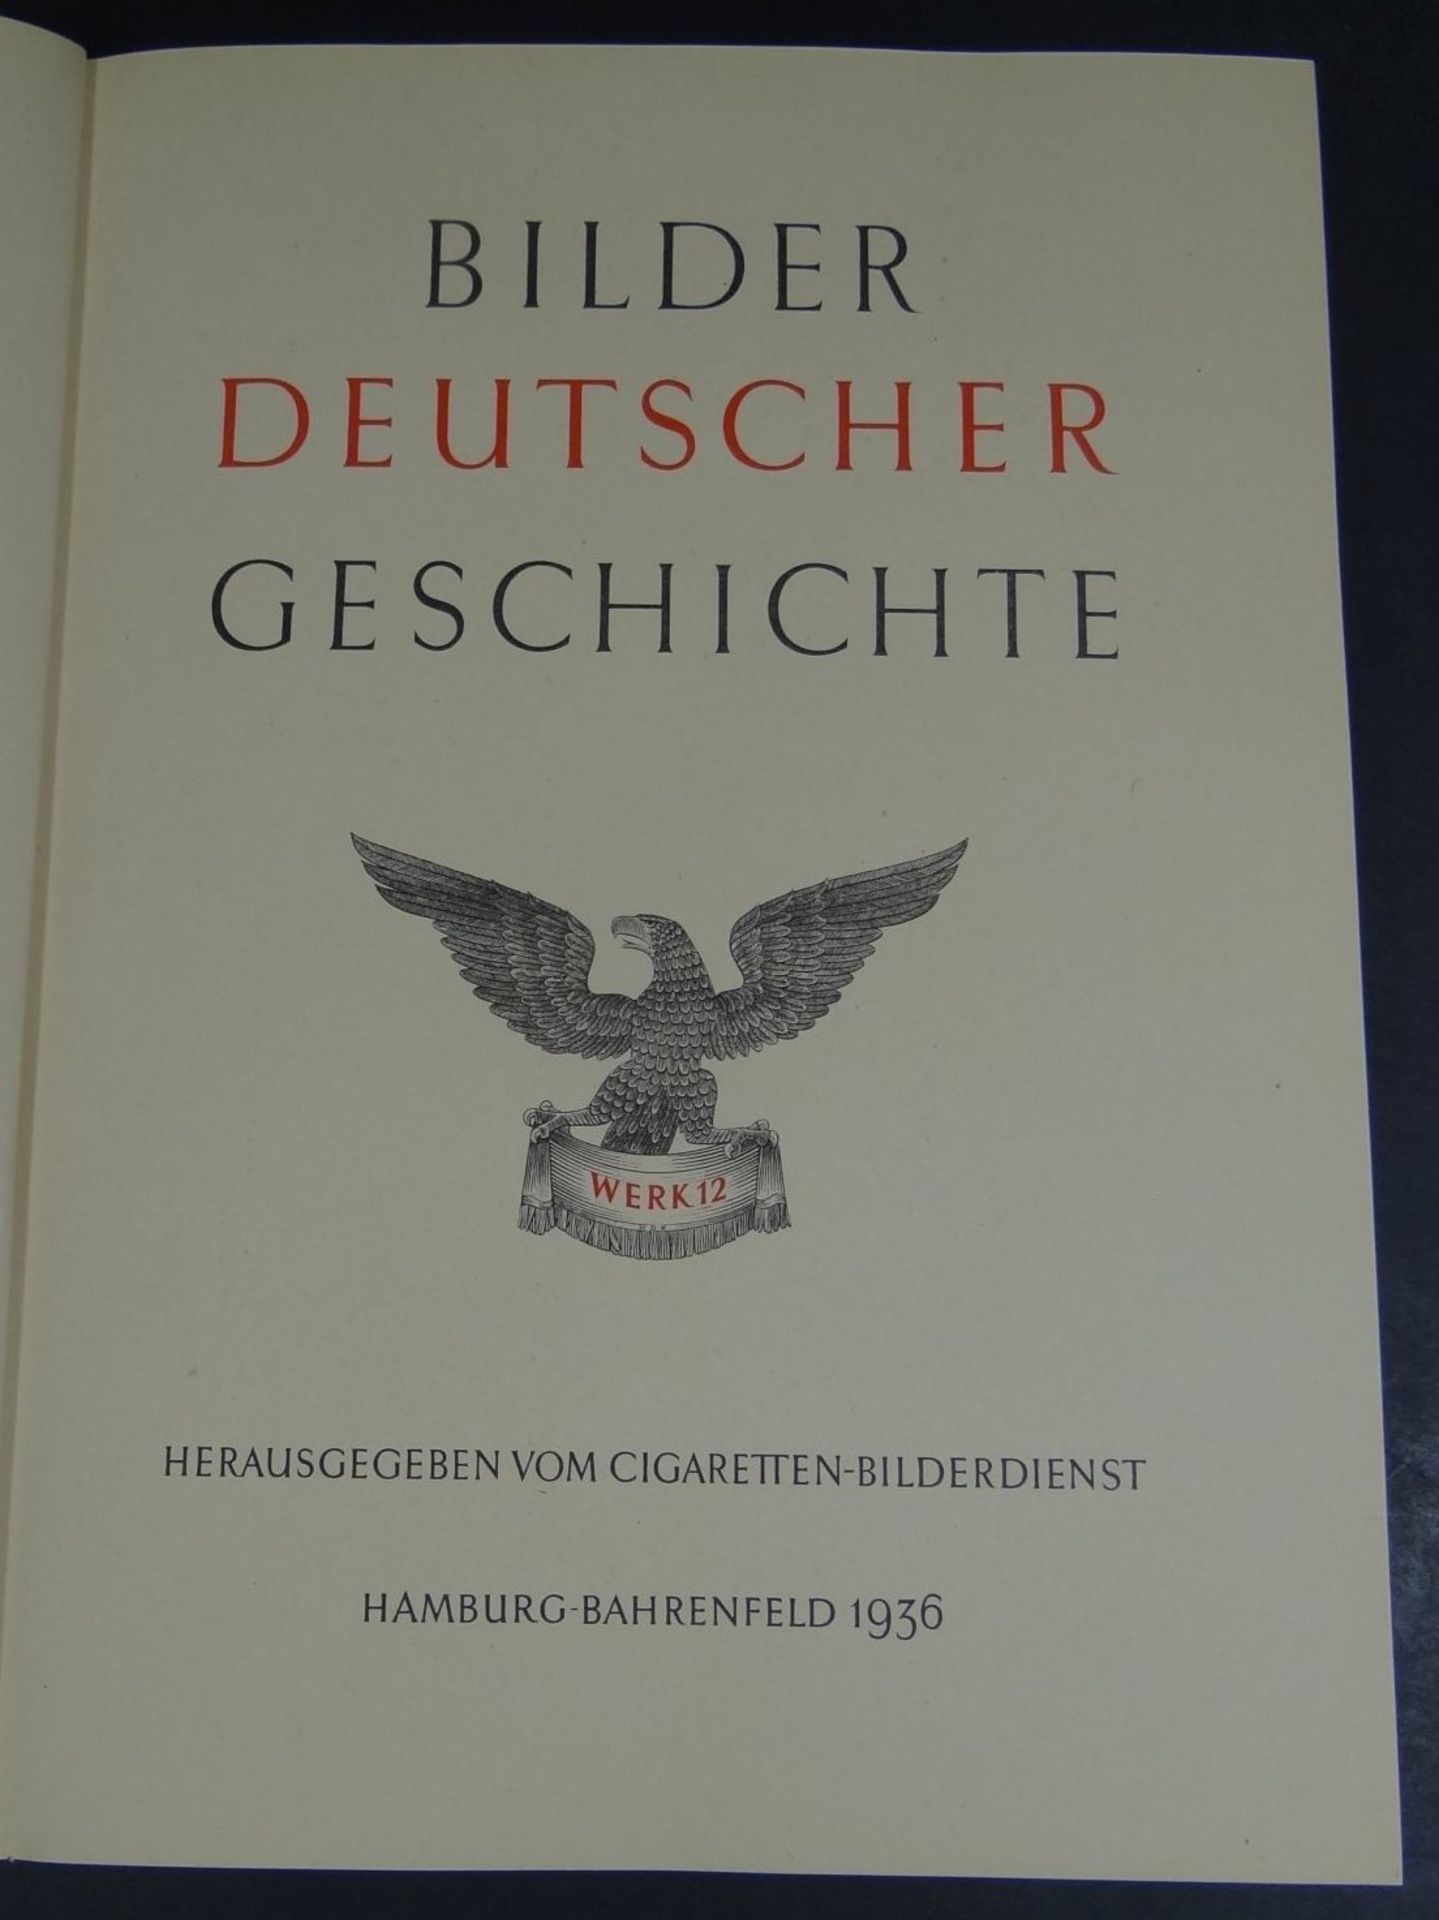 Sammelalbum "Bilder deutscher Geschichte" 1936 im Schuber, guter Zustand - Bild 2 aus 6